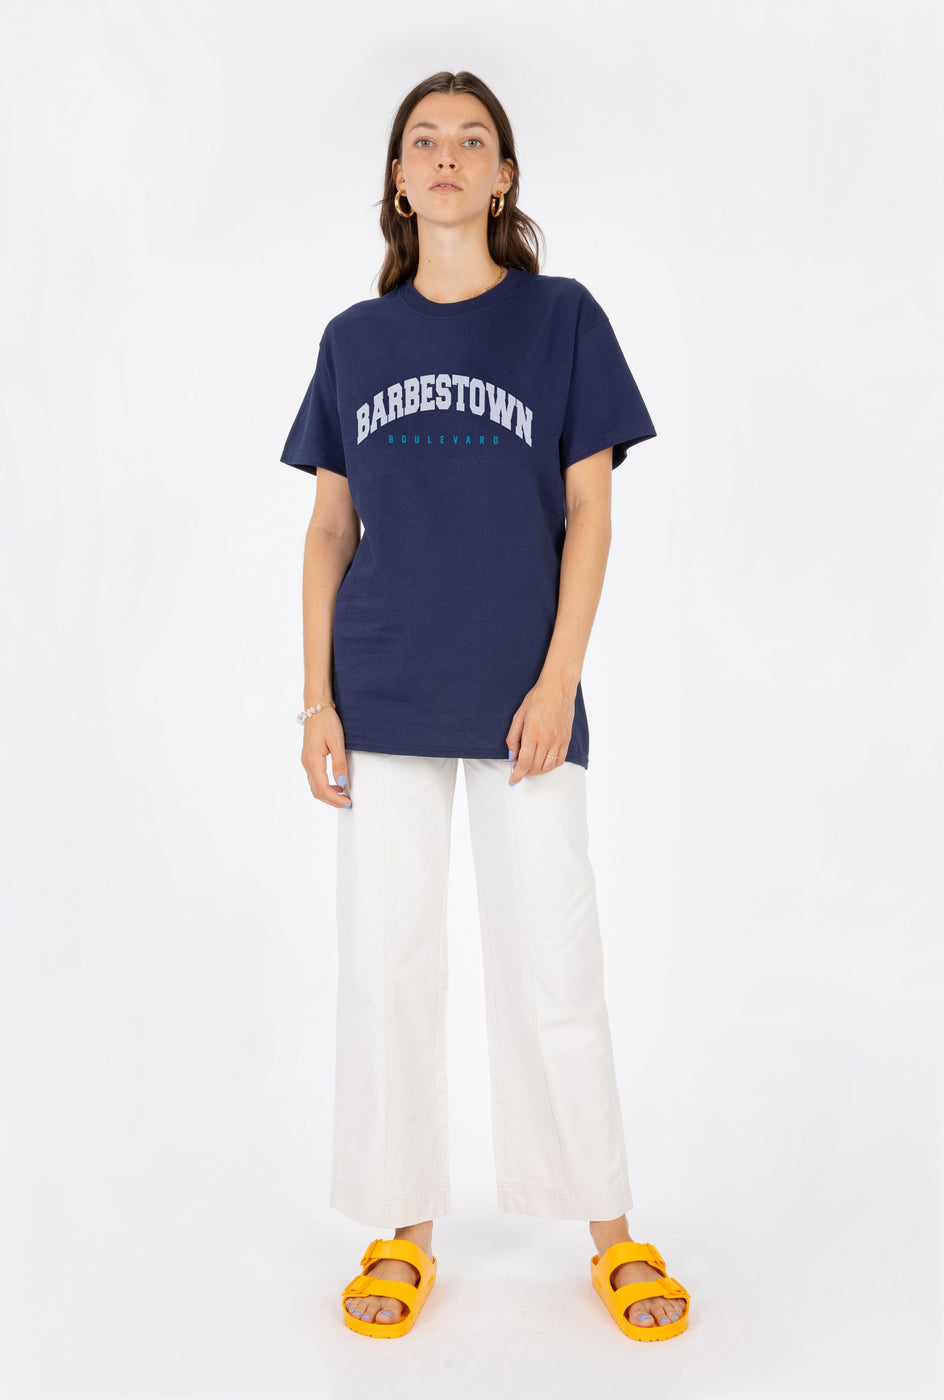 T-Shirt S/S Barbestown